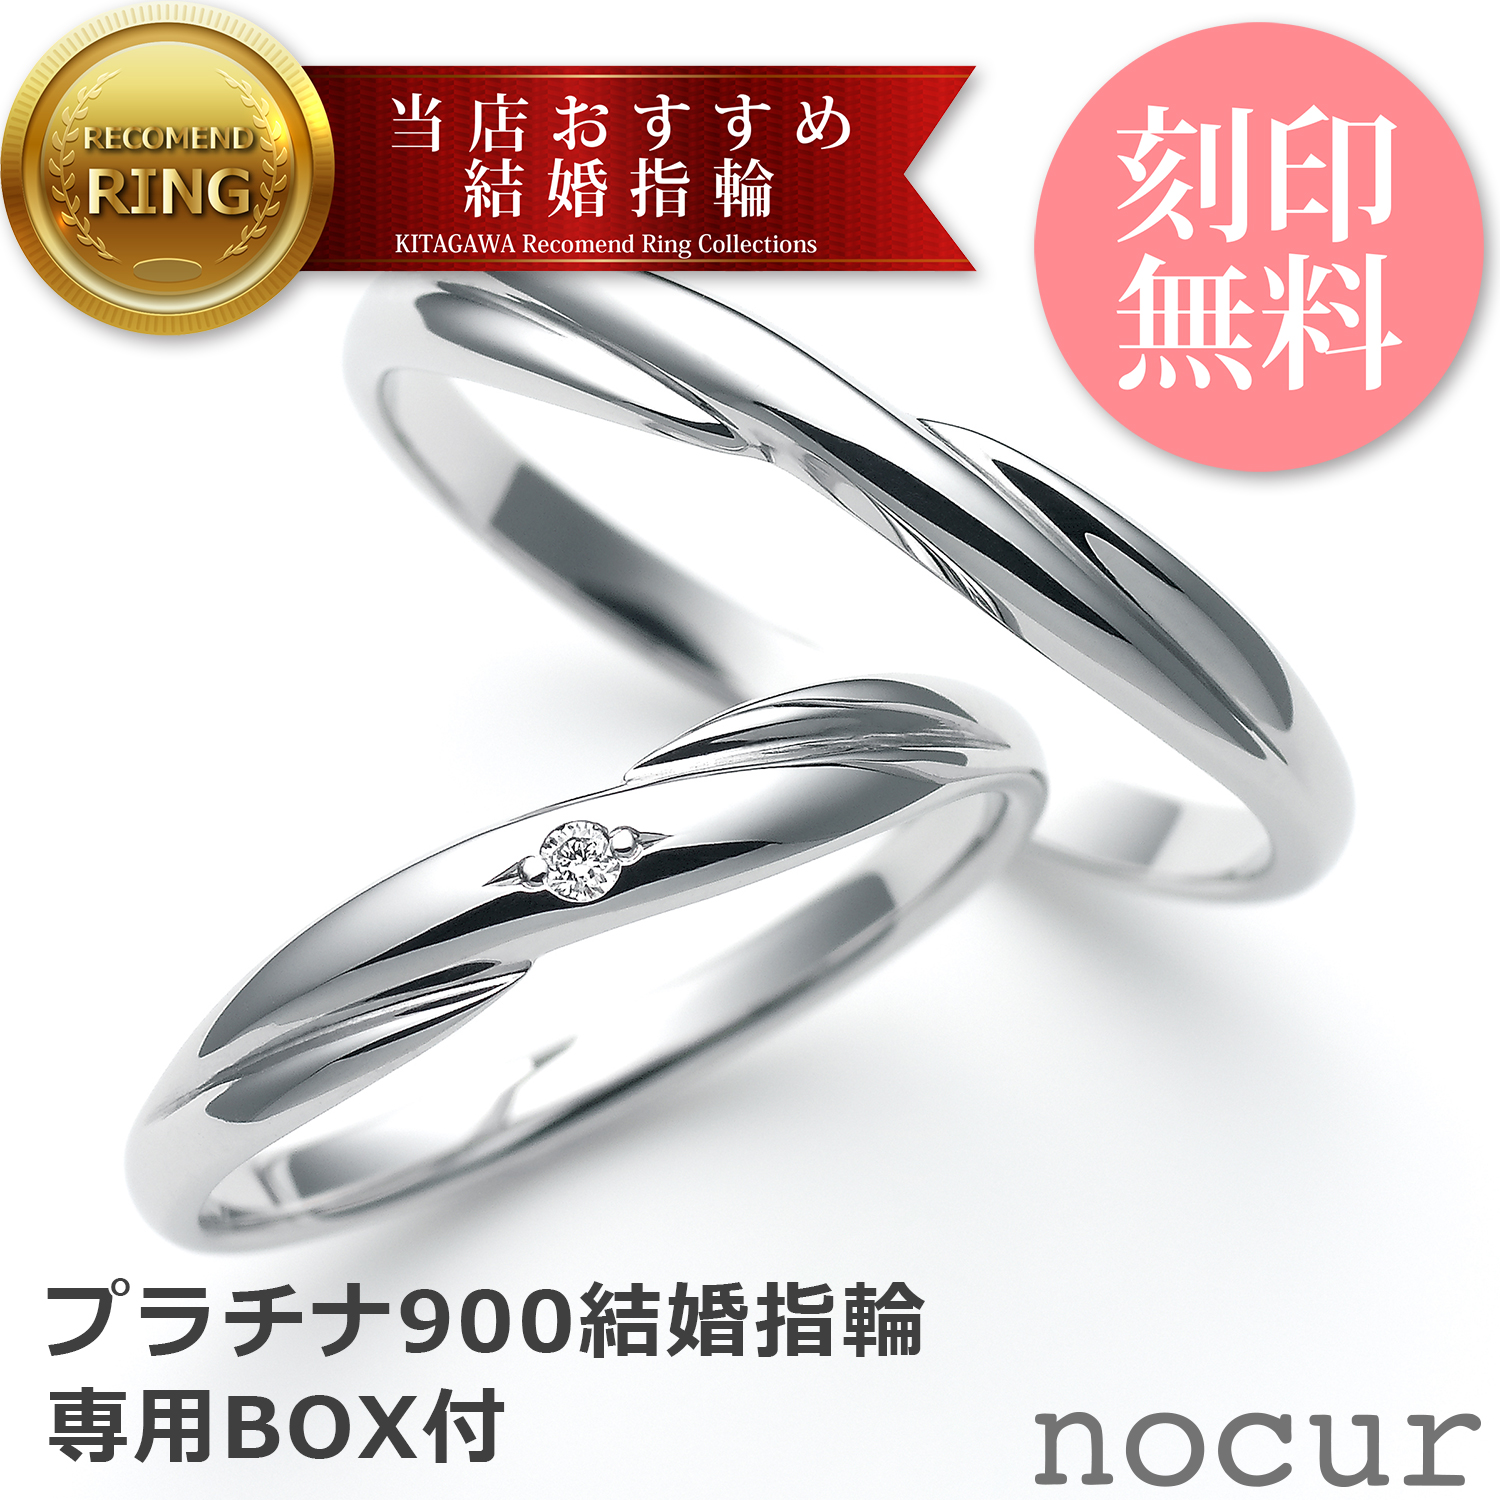 独特の上品 結婚指輪 プラチナ ペア ペアリング マリッジリング ダイヤモンドリング PT900 プラチナリング 2本セット 彼女 誕生日プレゼント  女性 刻印 リングゲージ貸出し nocur ノクル シンプル キュート nocur-cn053-cn054